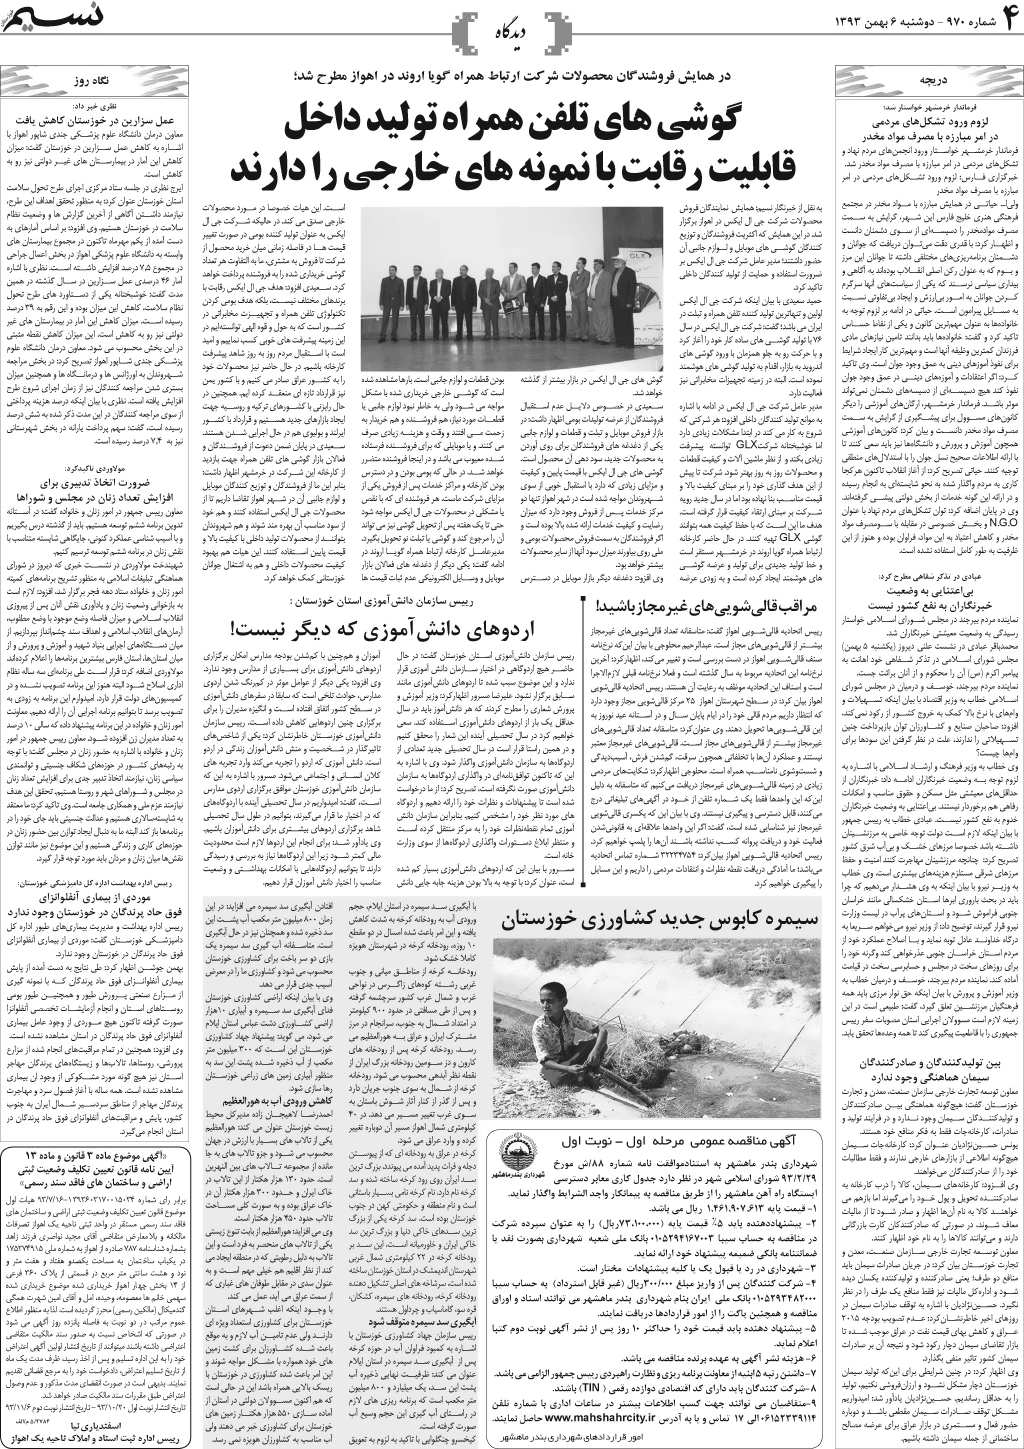 صفحه دیدگاه روزنامه نسیم شماره 970